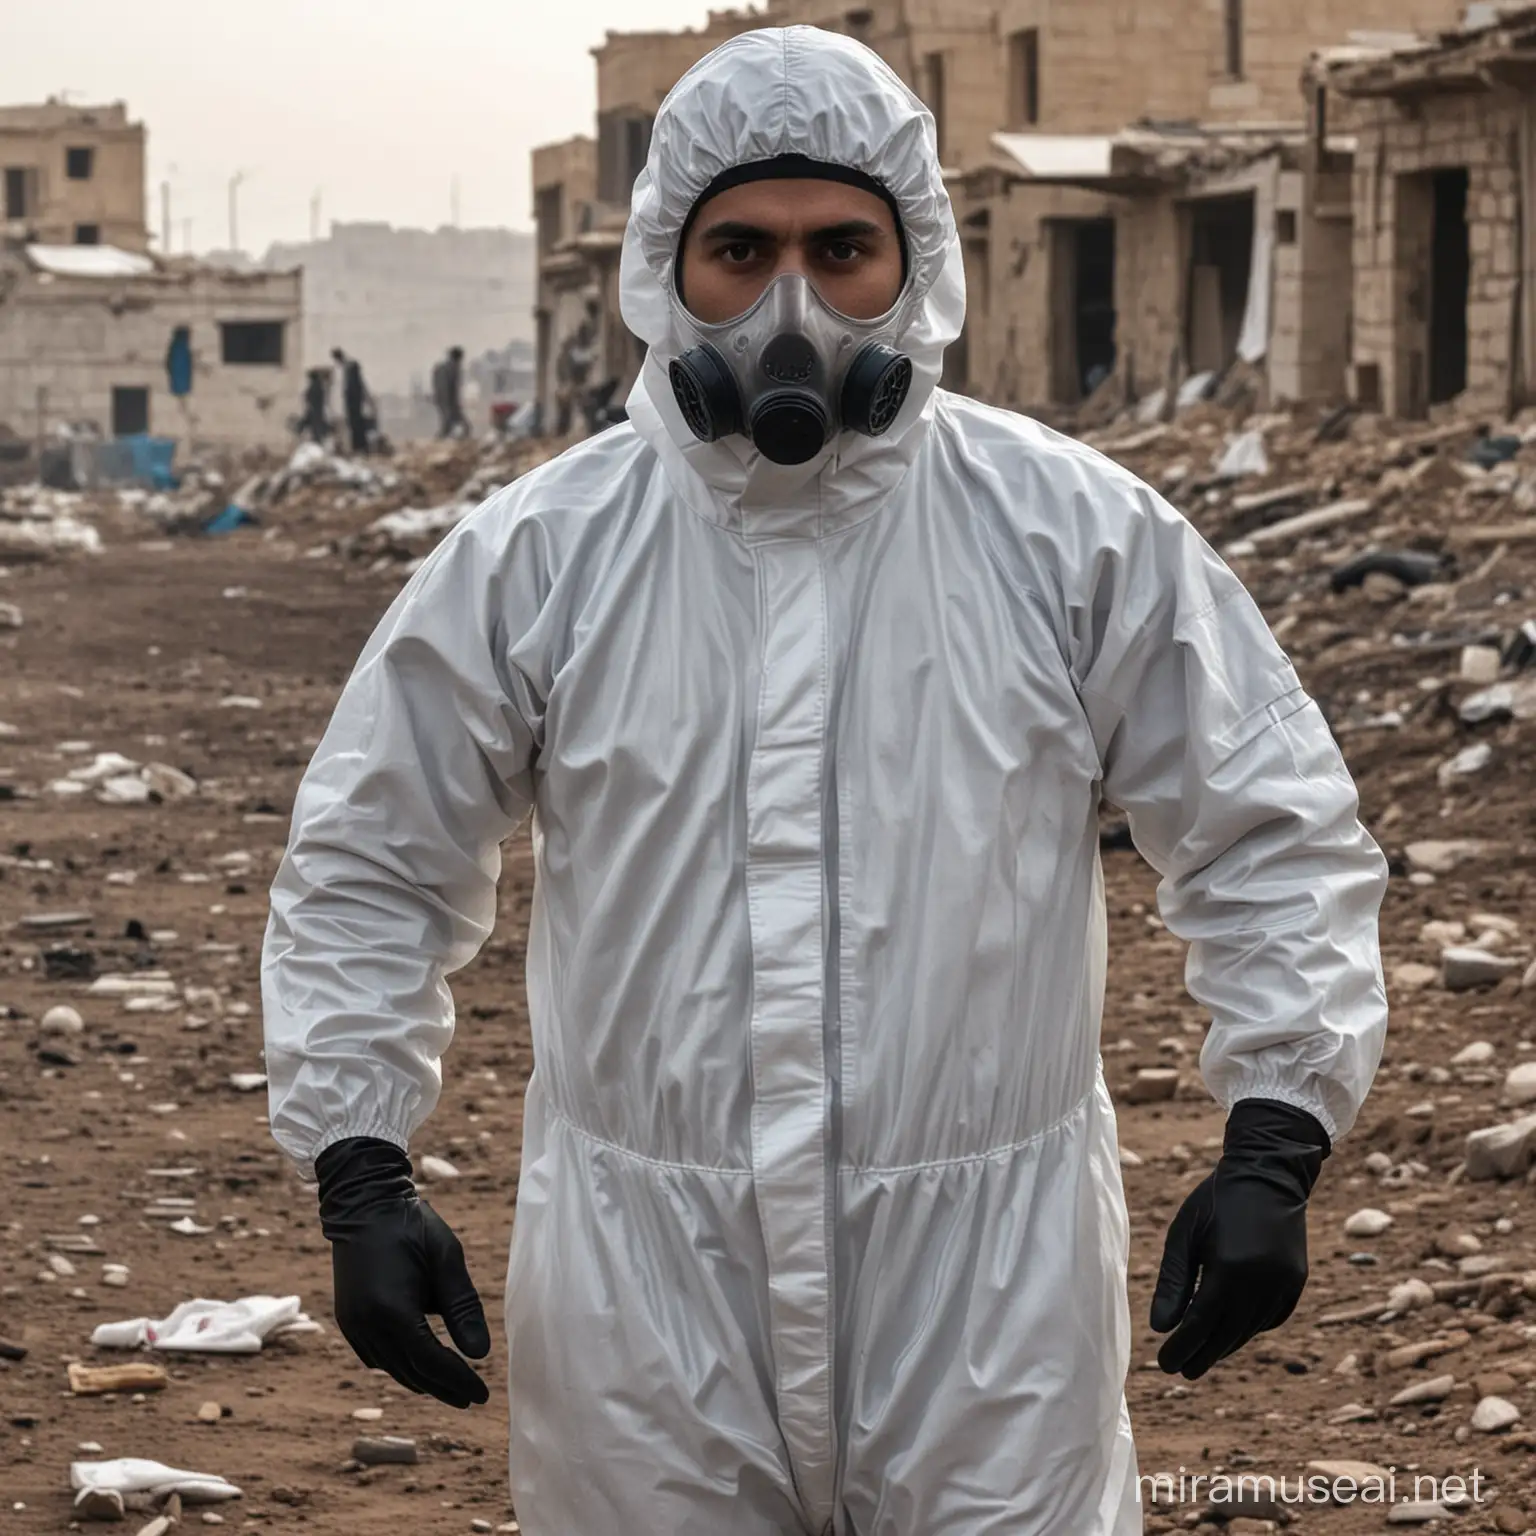 syrian man in hazmat suit